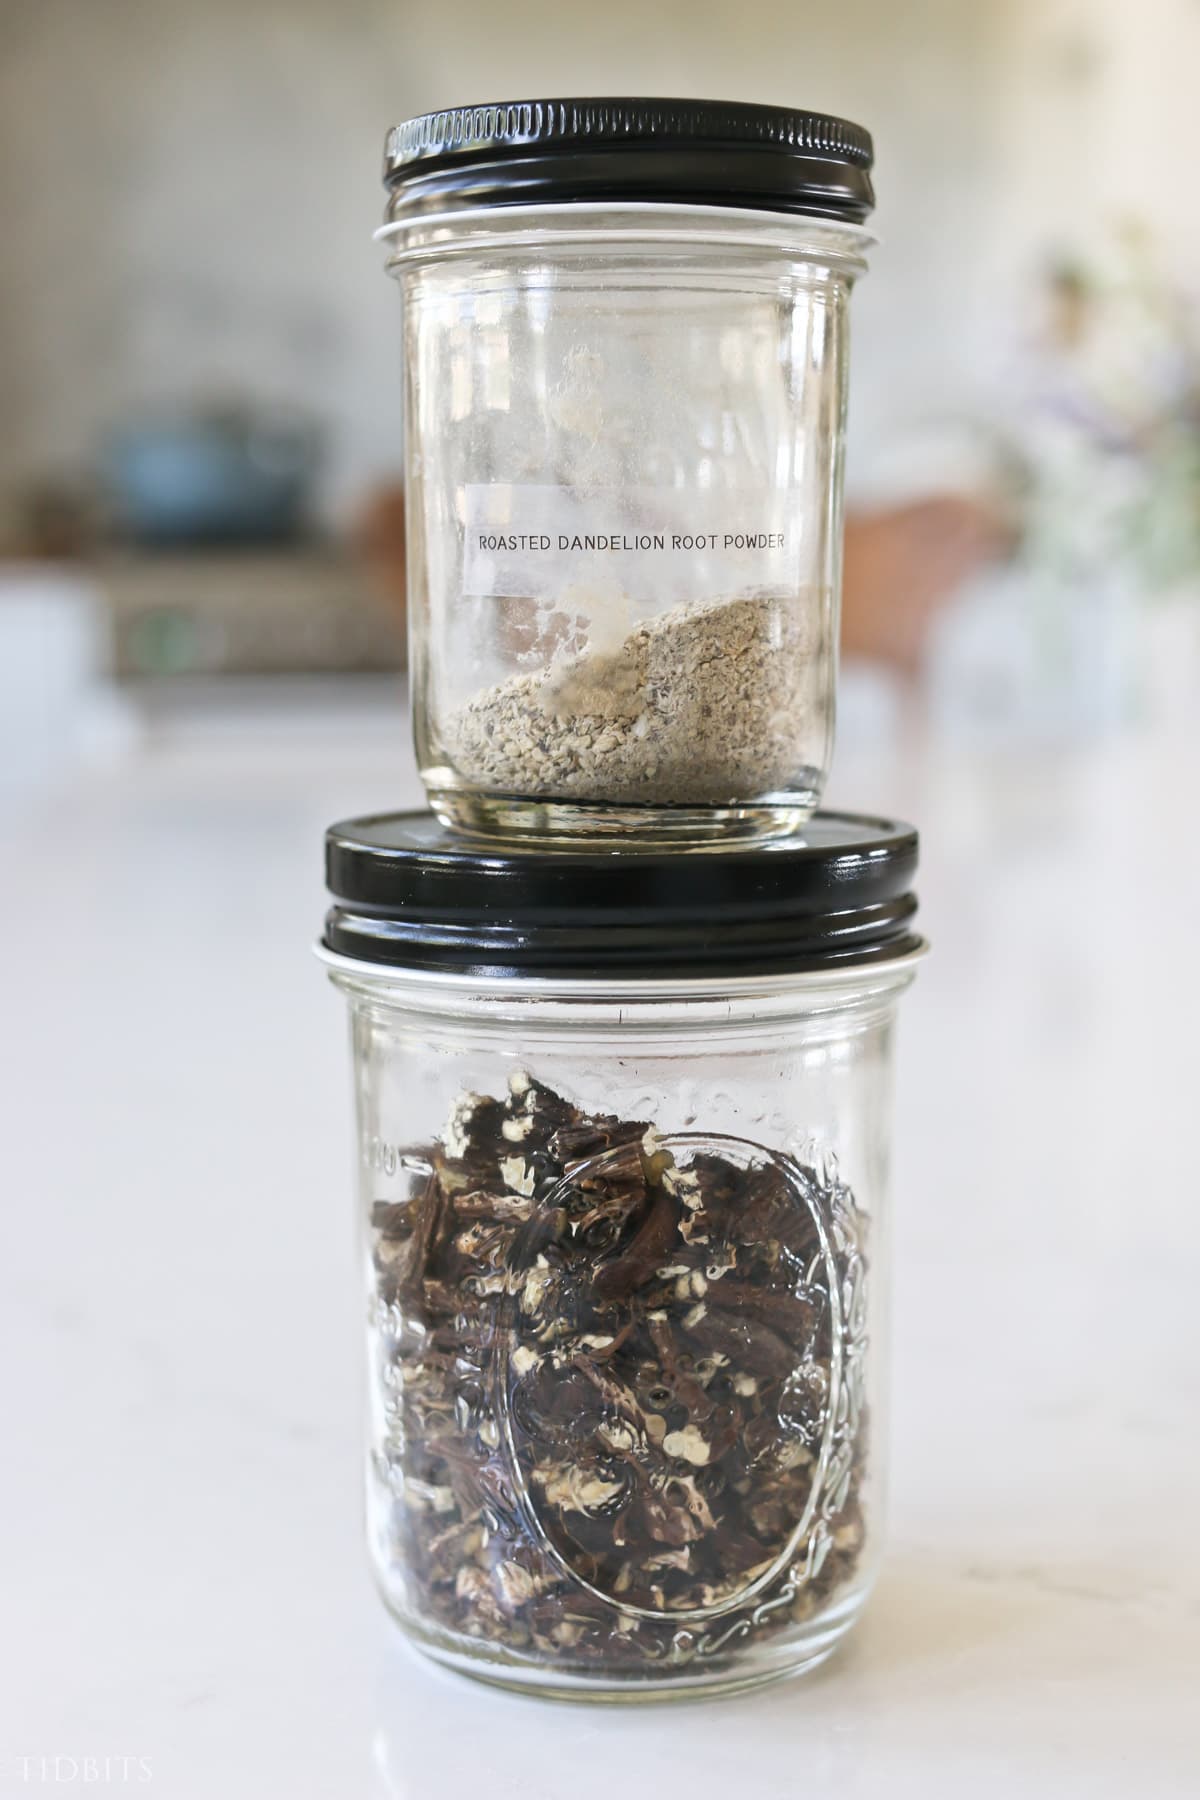 Dried dandelion in a glass jar